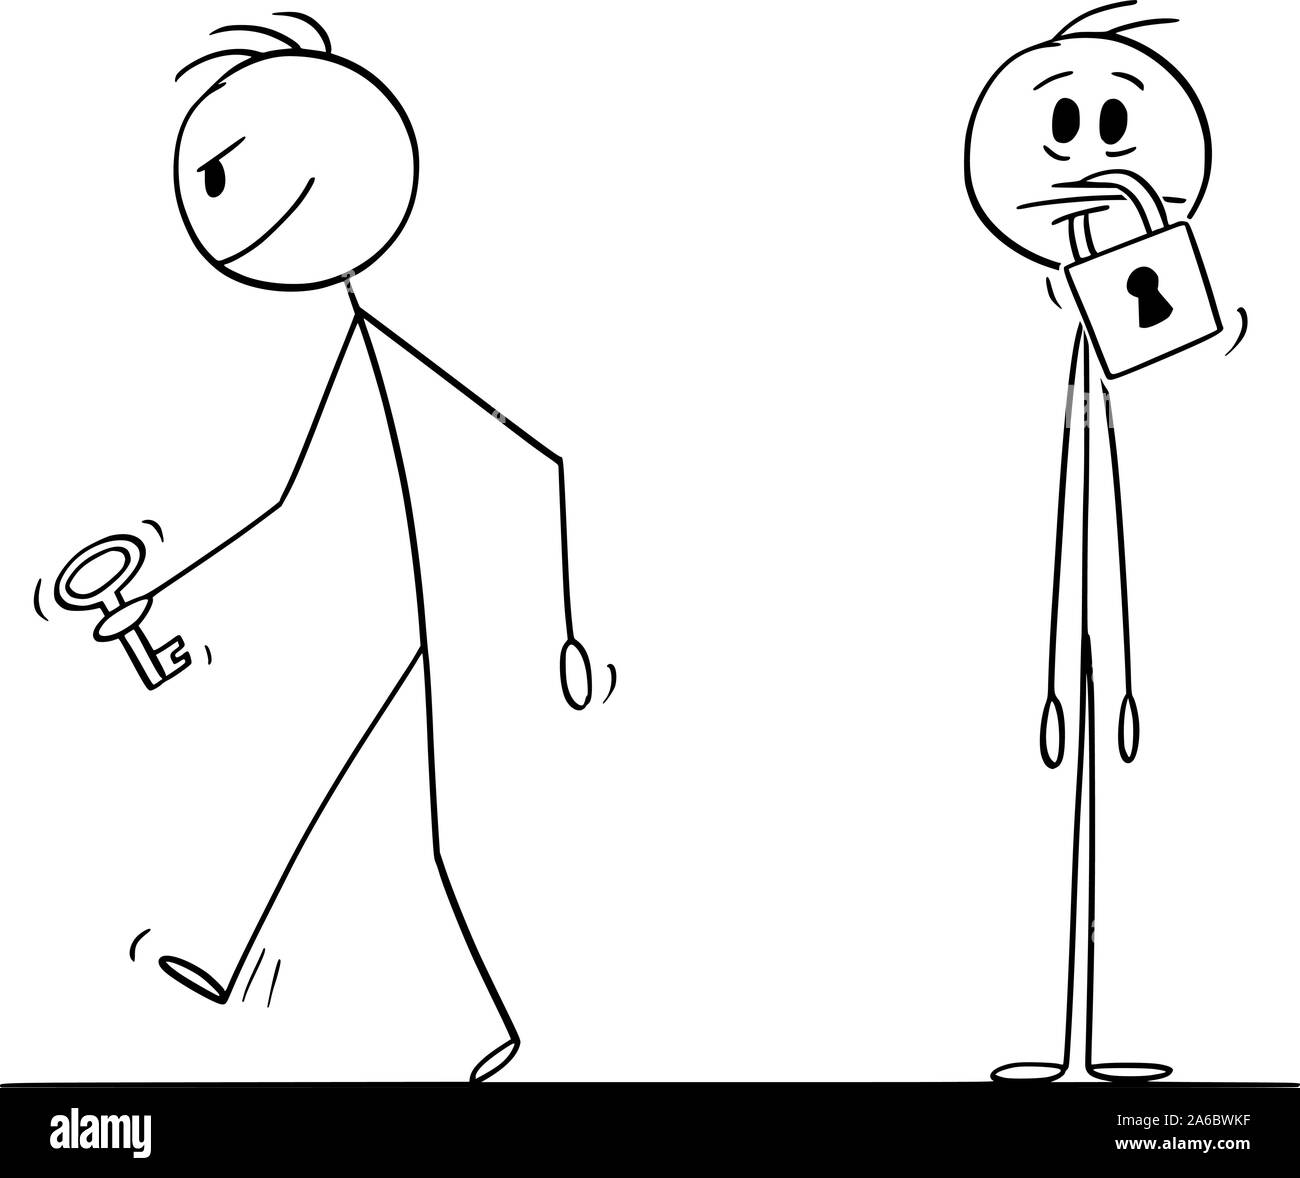 Vector cartoon stick figura disegno illustrazione concettuale dell'uomo con lucchetto sulla sua bocca, un altro uomo è in partenza con la chiave. Concetto di silenzio e la censura. Illustrazione Vettoriale